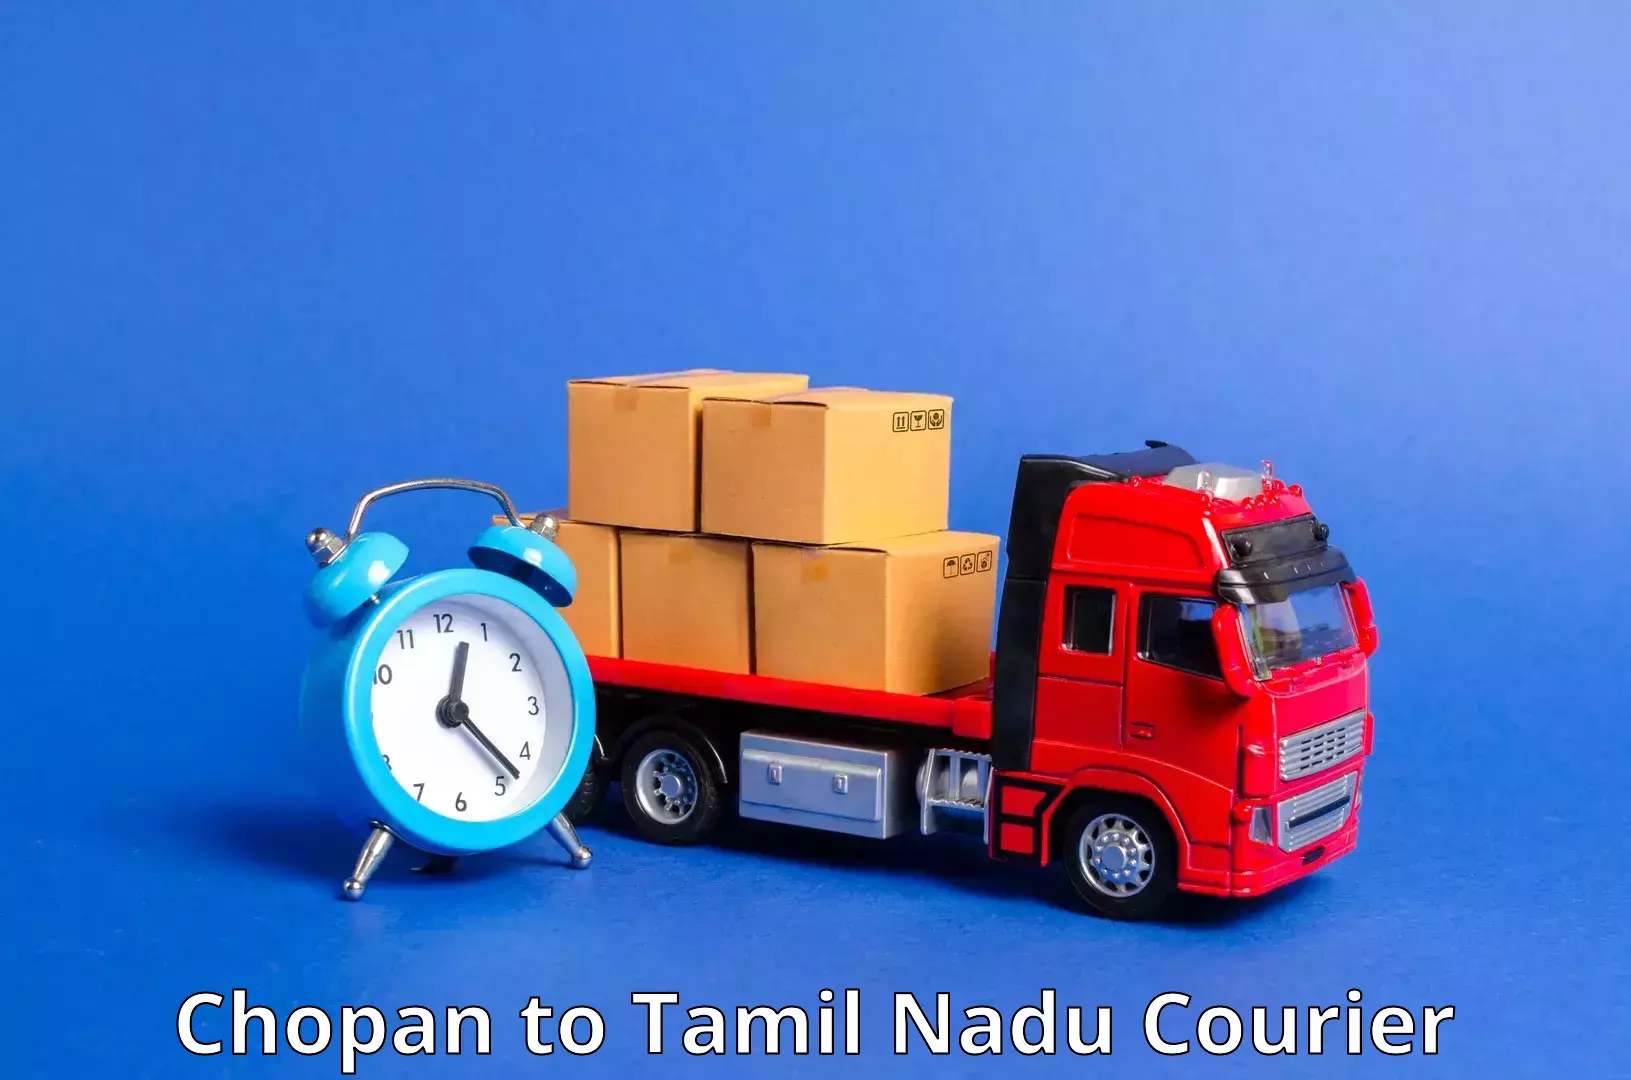 International courier rates Chopan to Villupuram